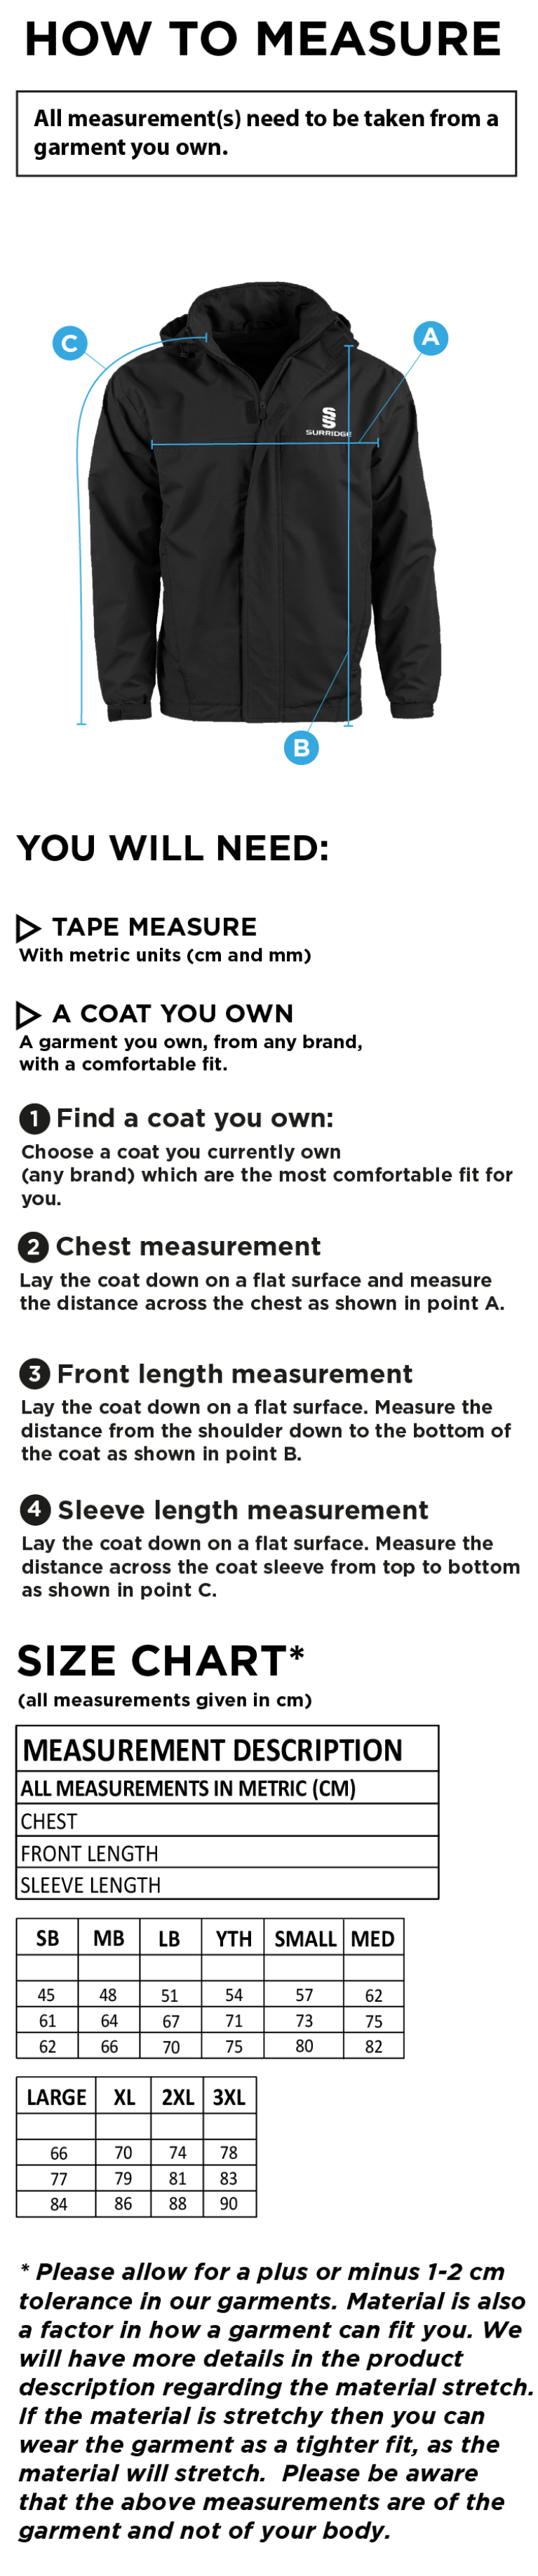 Long Ashton FC Dual Fleece Lined Jacket - Size Guide